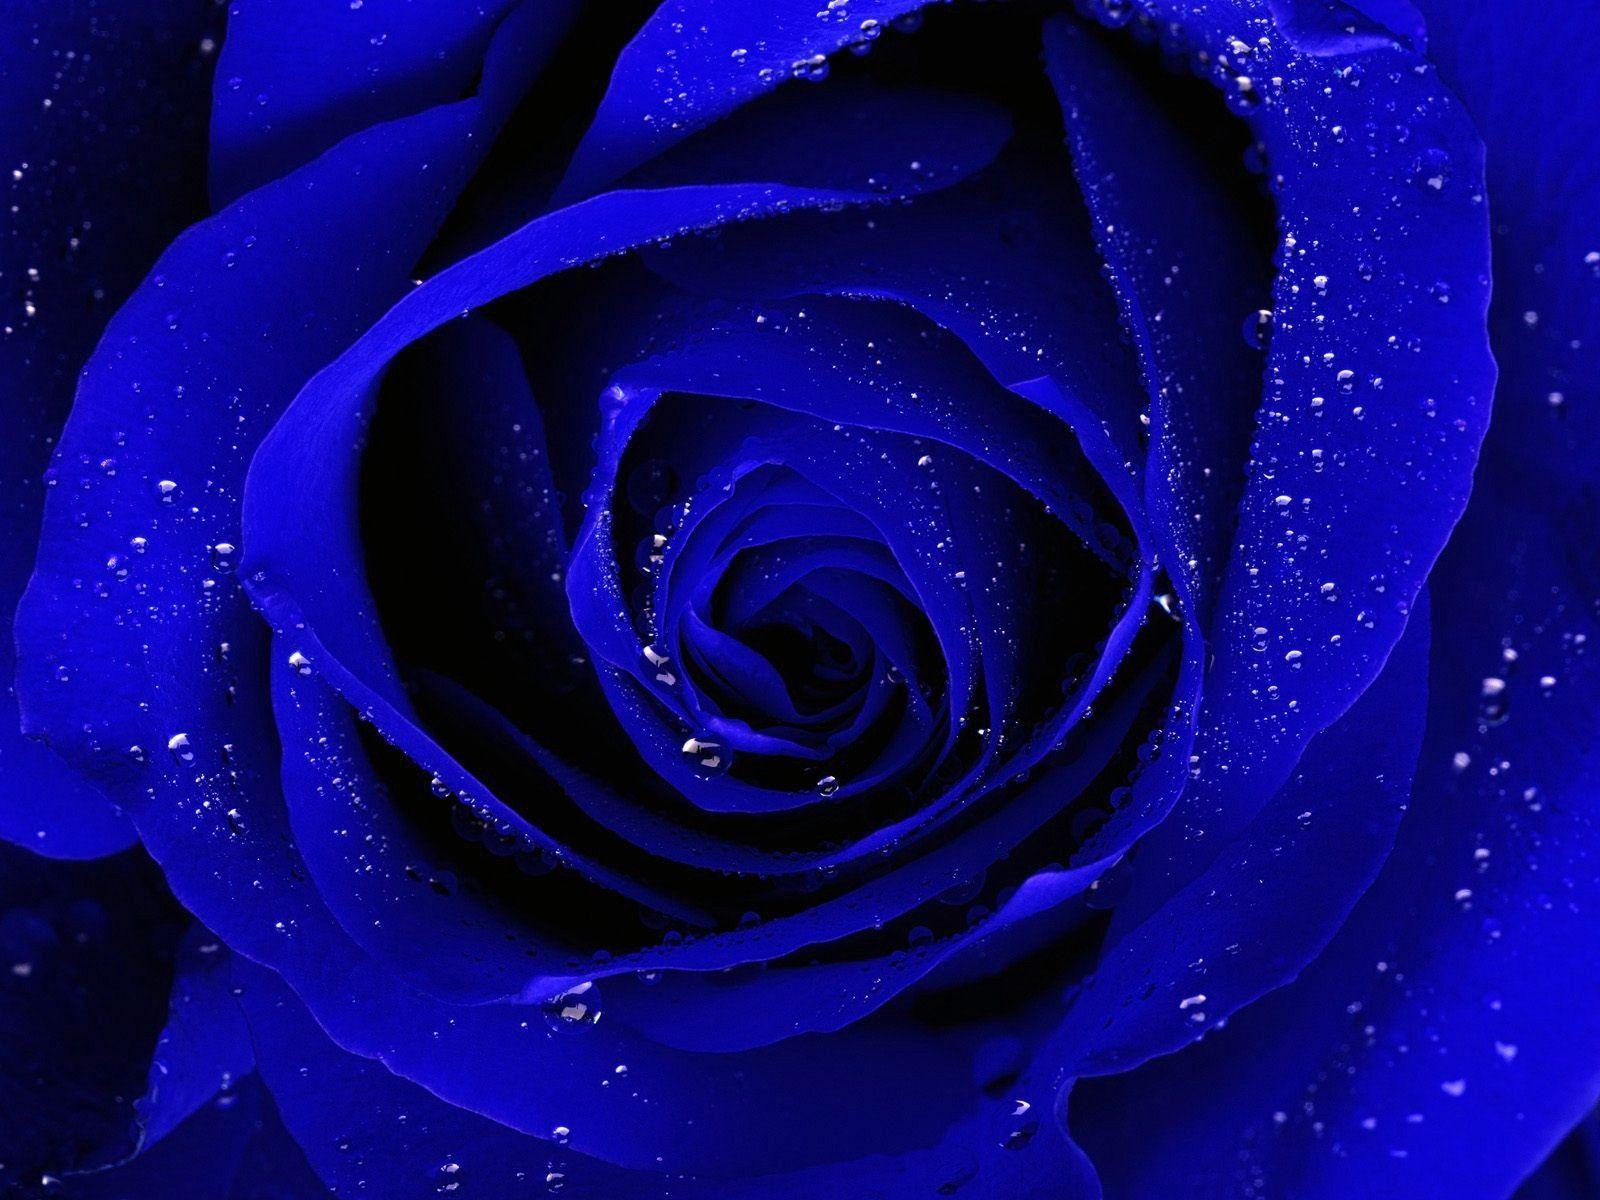 Blue Rose Images Hd Wallpaper Download : Wallpaper: Blue Rose ...